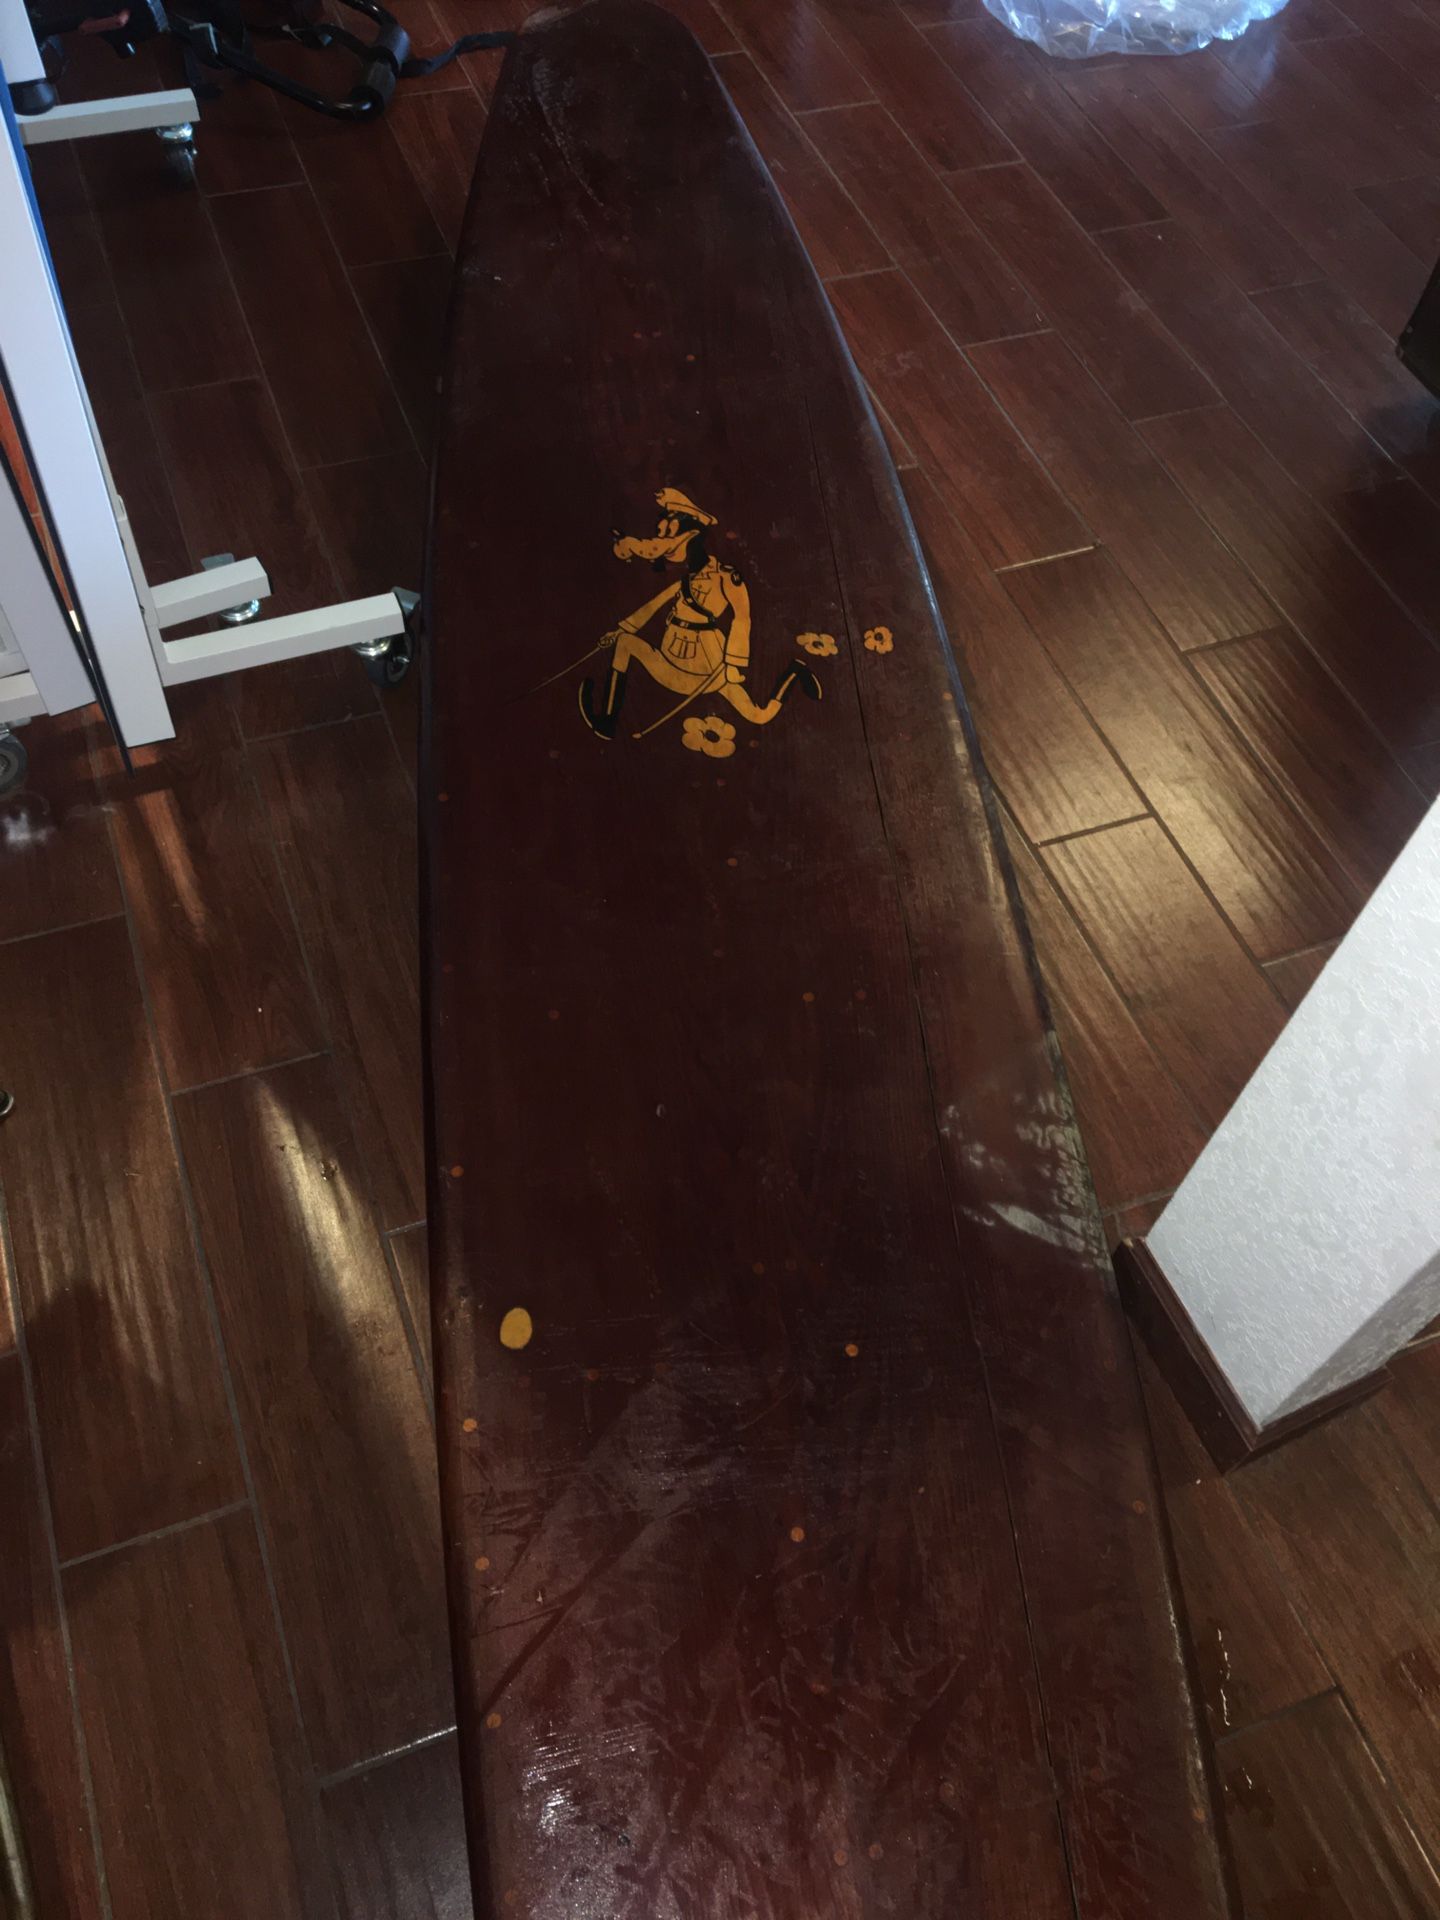 Vintage wooden surfboard/paddleboard